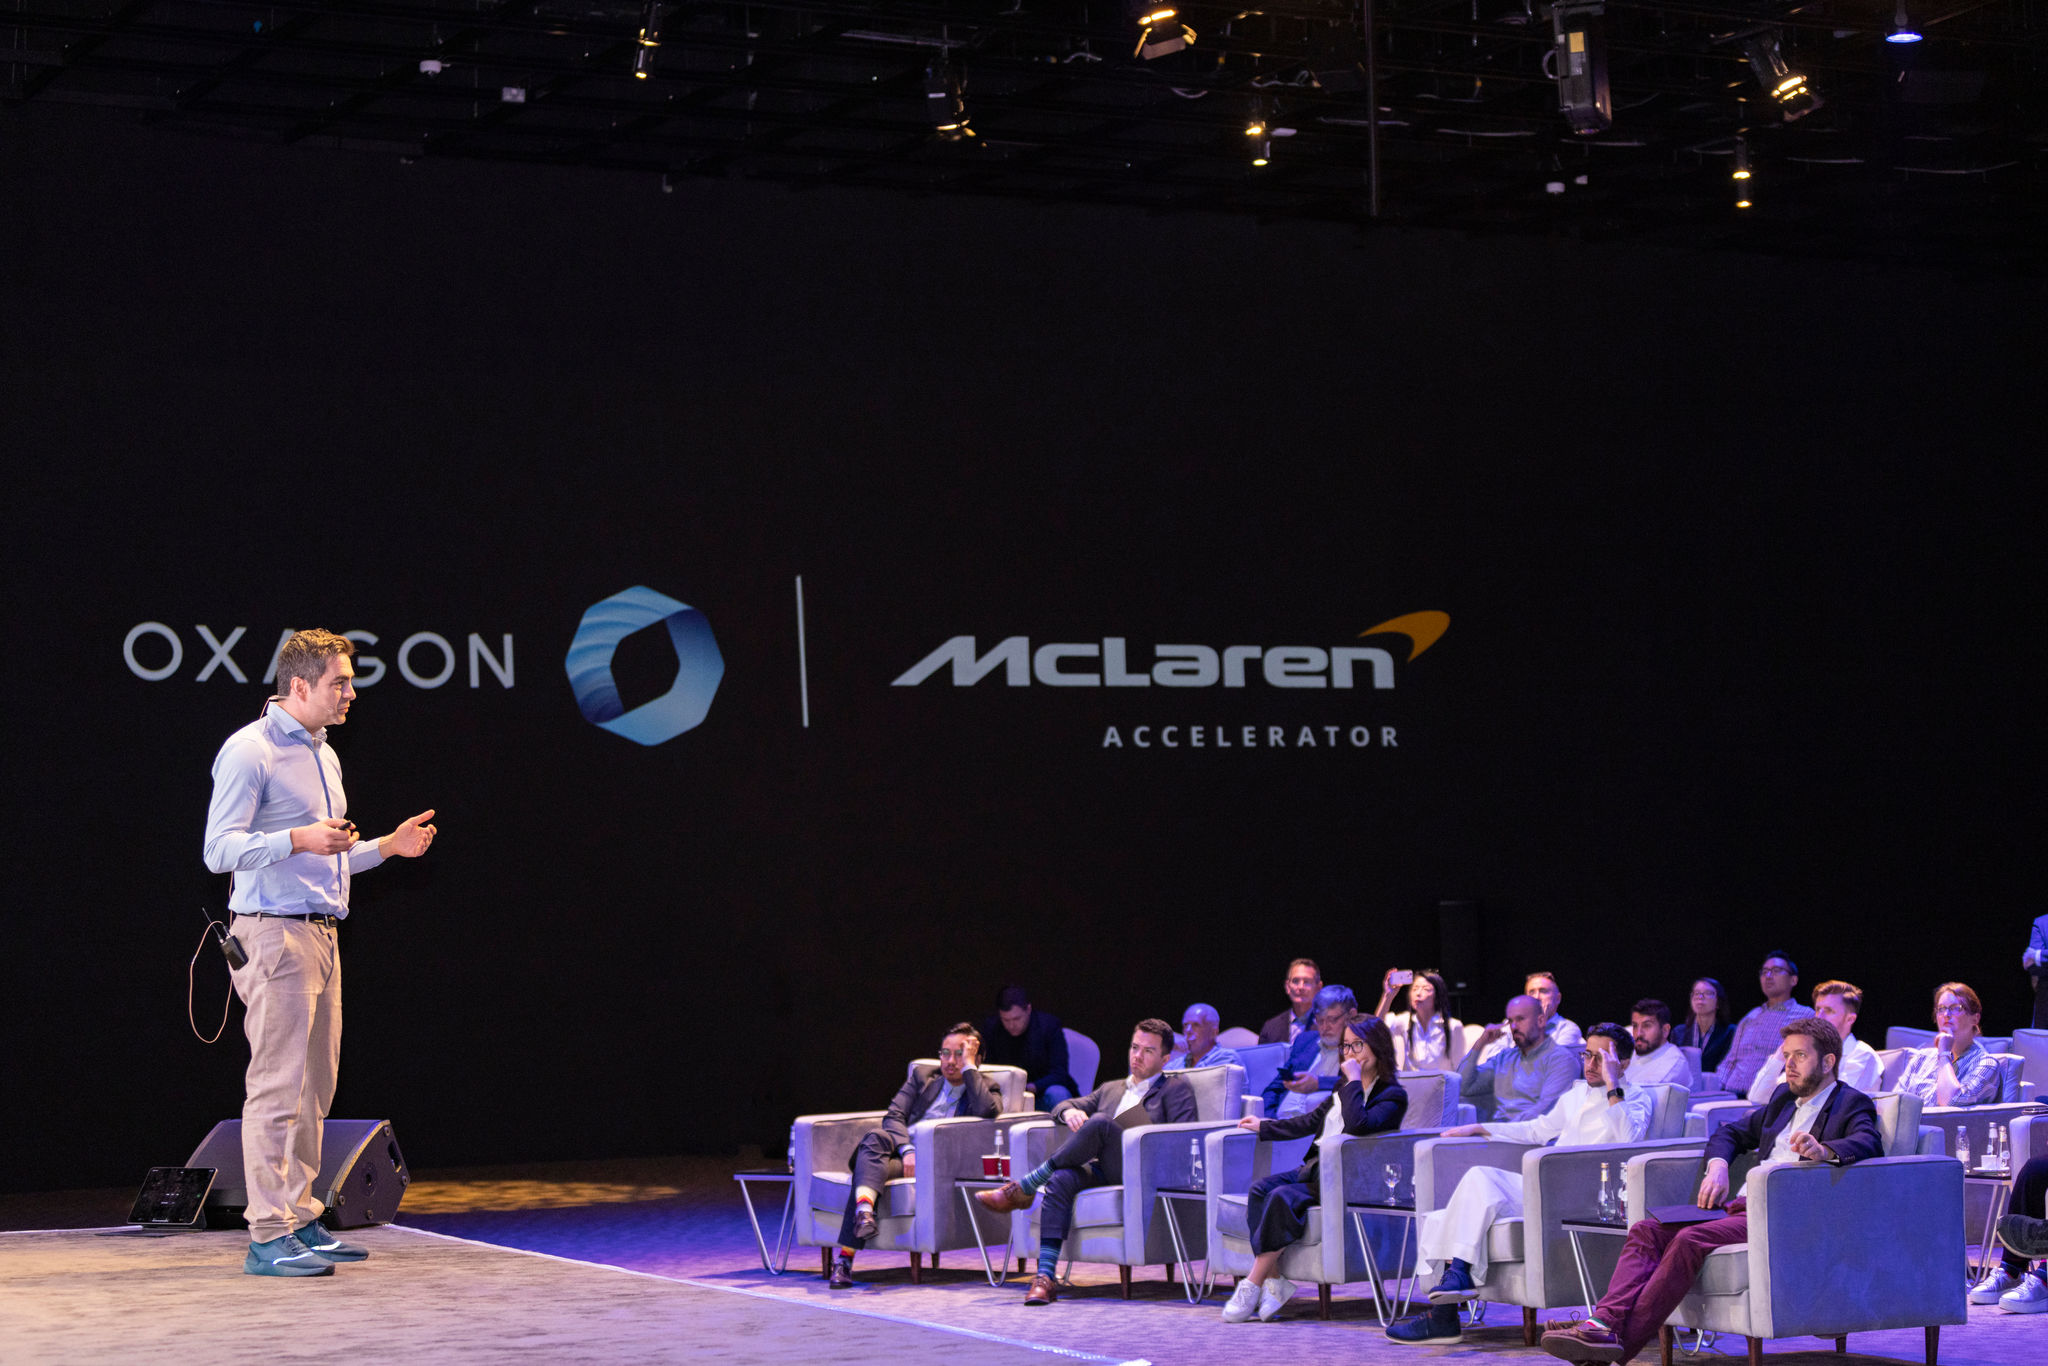 Oxagon x McLaren Accelerator-Raum in Riad, wo Teilnehmer Investoren und Unternehmen neue Ideen vorstellen können